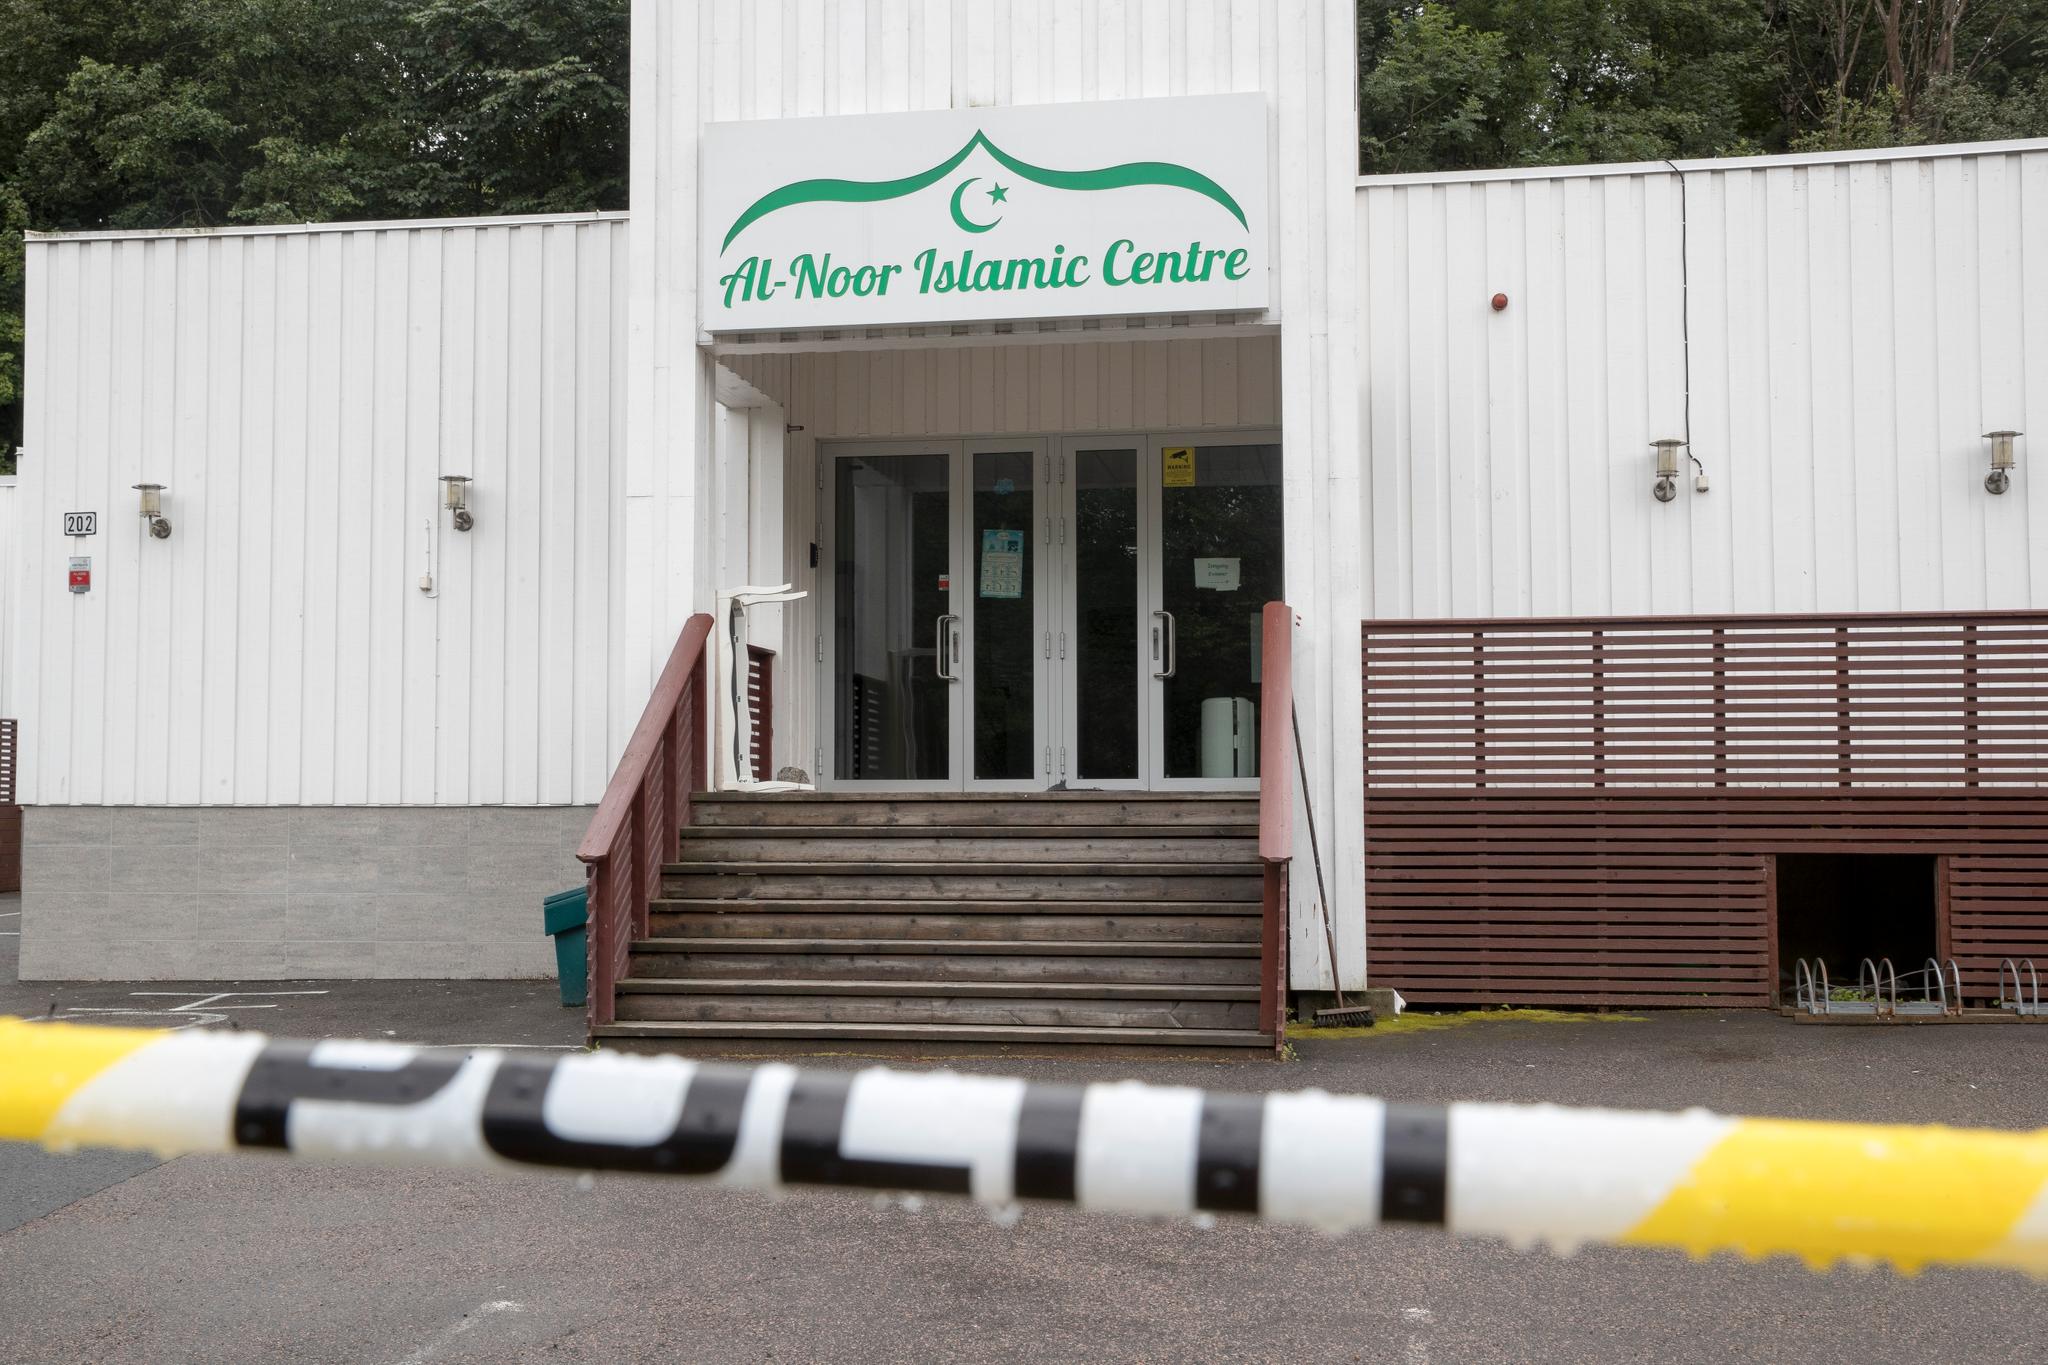 Etter drapet og terrorforsøket mot en moské i Bærum, har vi plutselig fått øynene opp for den nye formen for høyreekstremisme som har utviklet seg de siste årene, skriver debattanten.